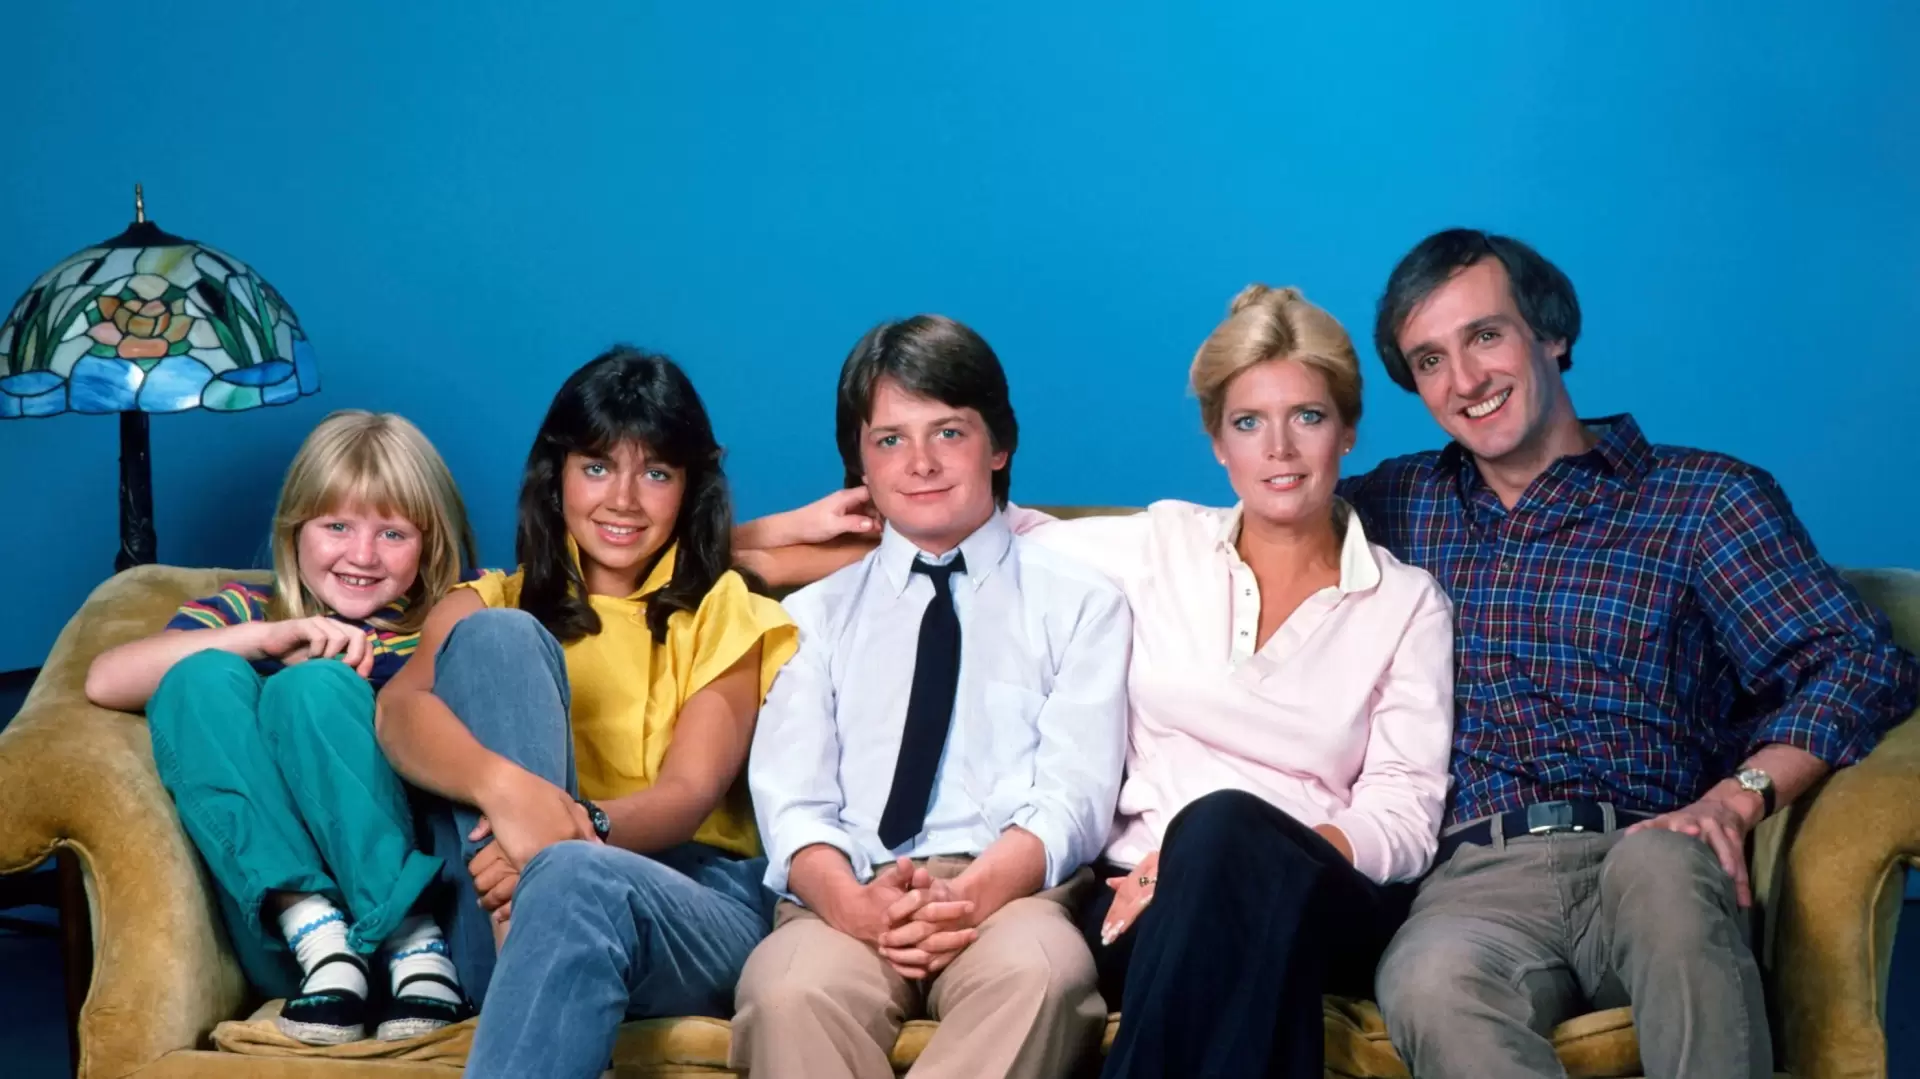 دانلود سریال Family Ties 1982